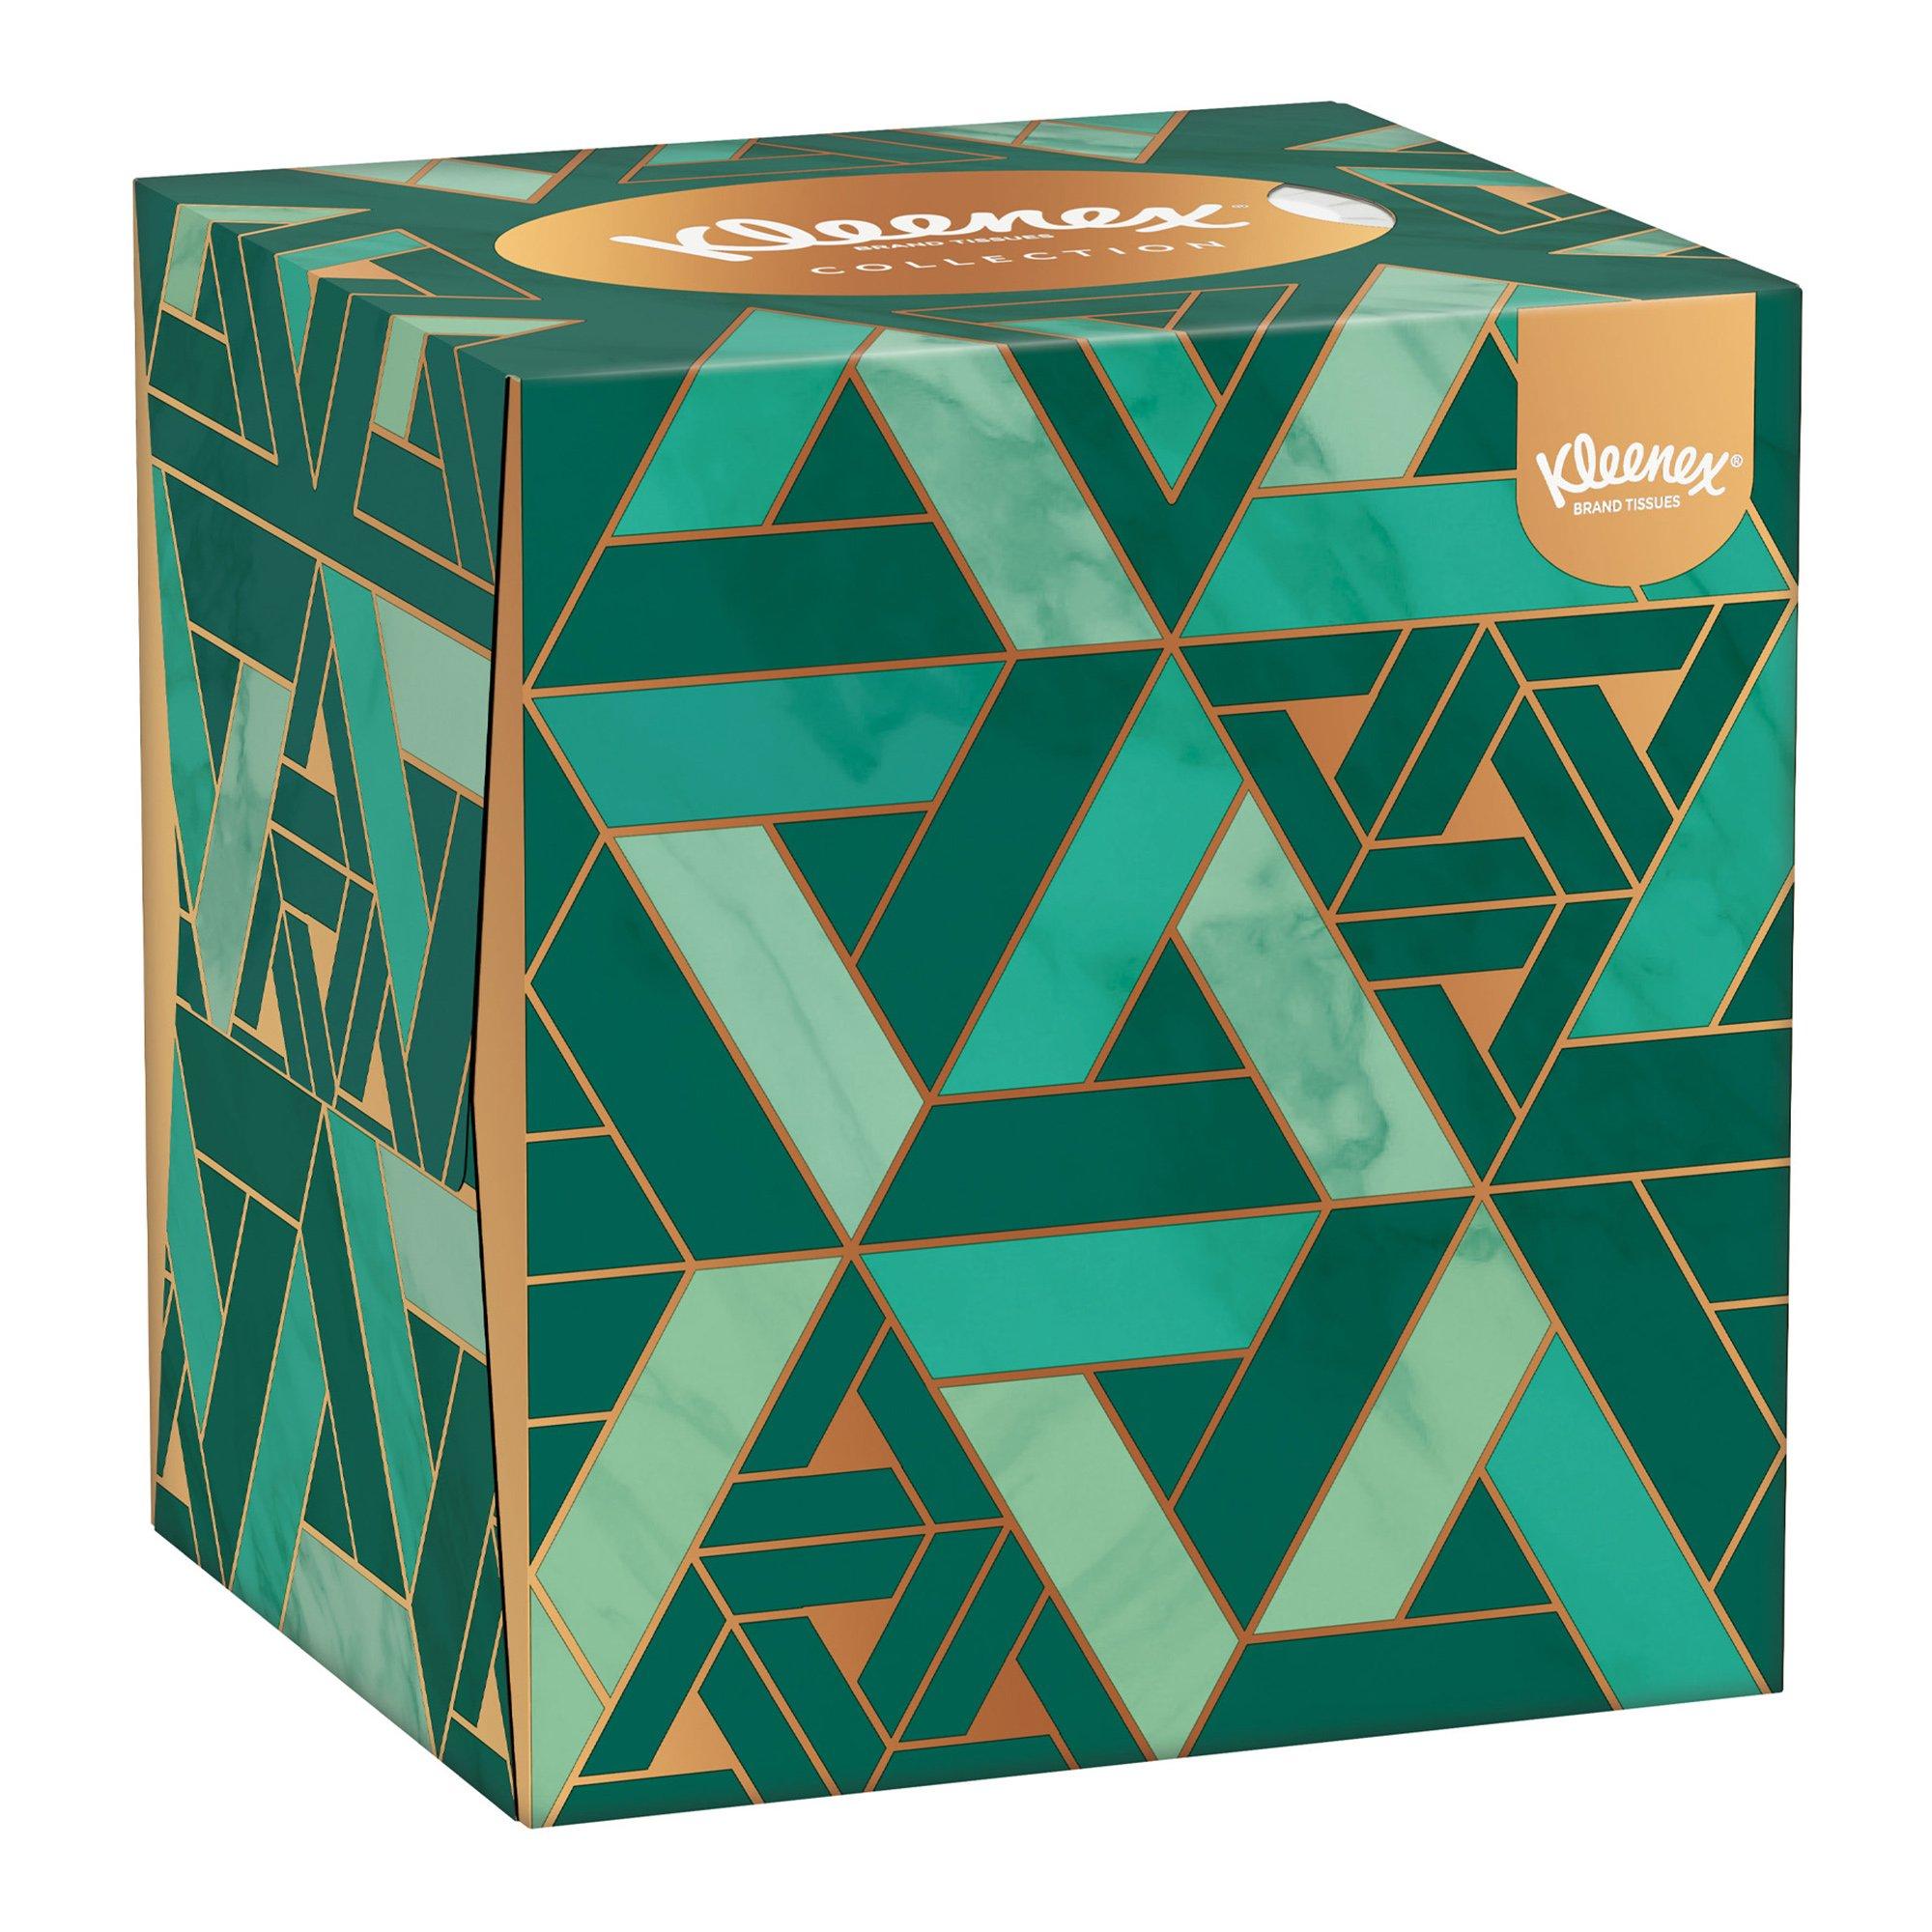 Kleenex Mouchoirs Baume Box 3 x 56 pièces